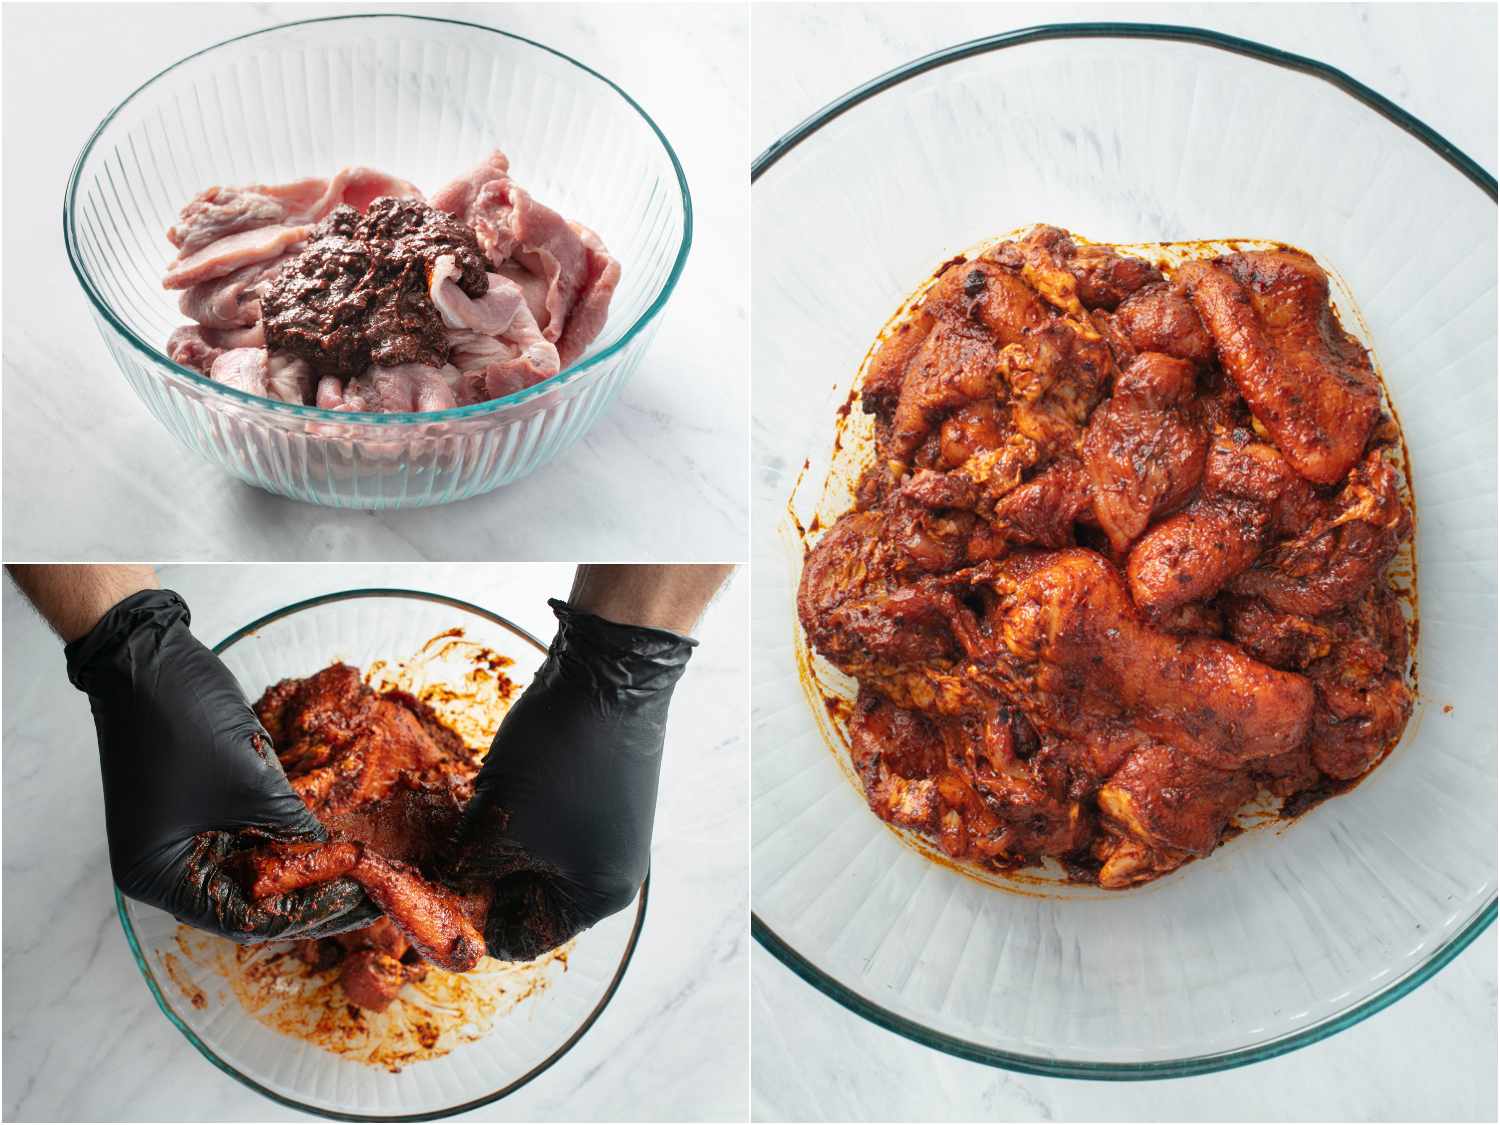 拼贴:将腌料加入碗中;戴着手套的手在肉上涂上腌料;腌好的肉放在碗里